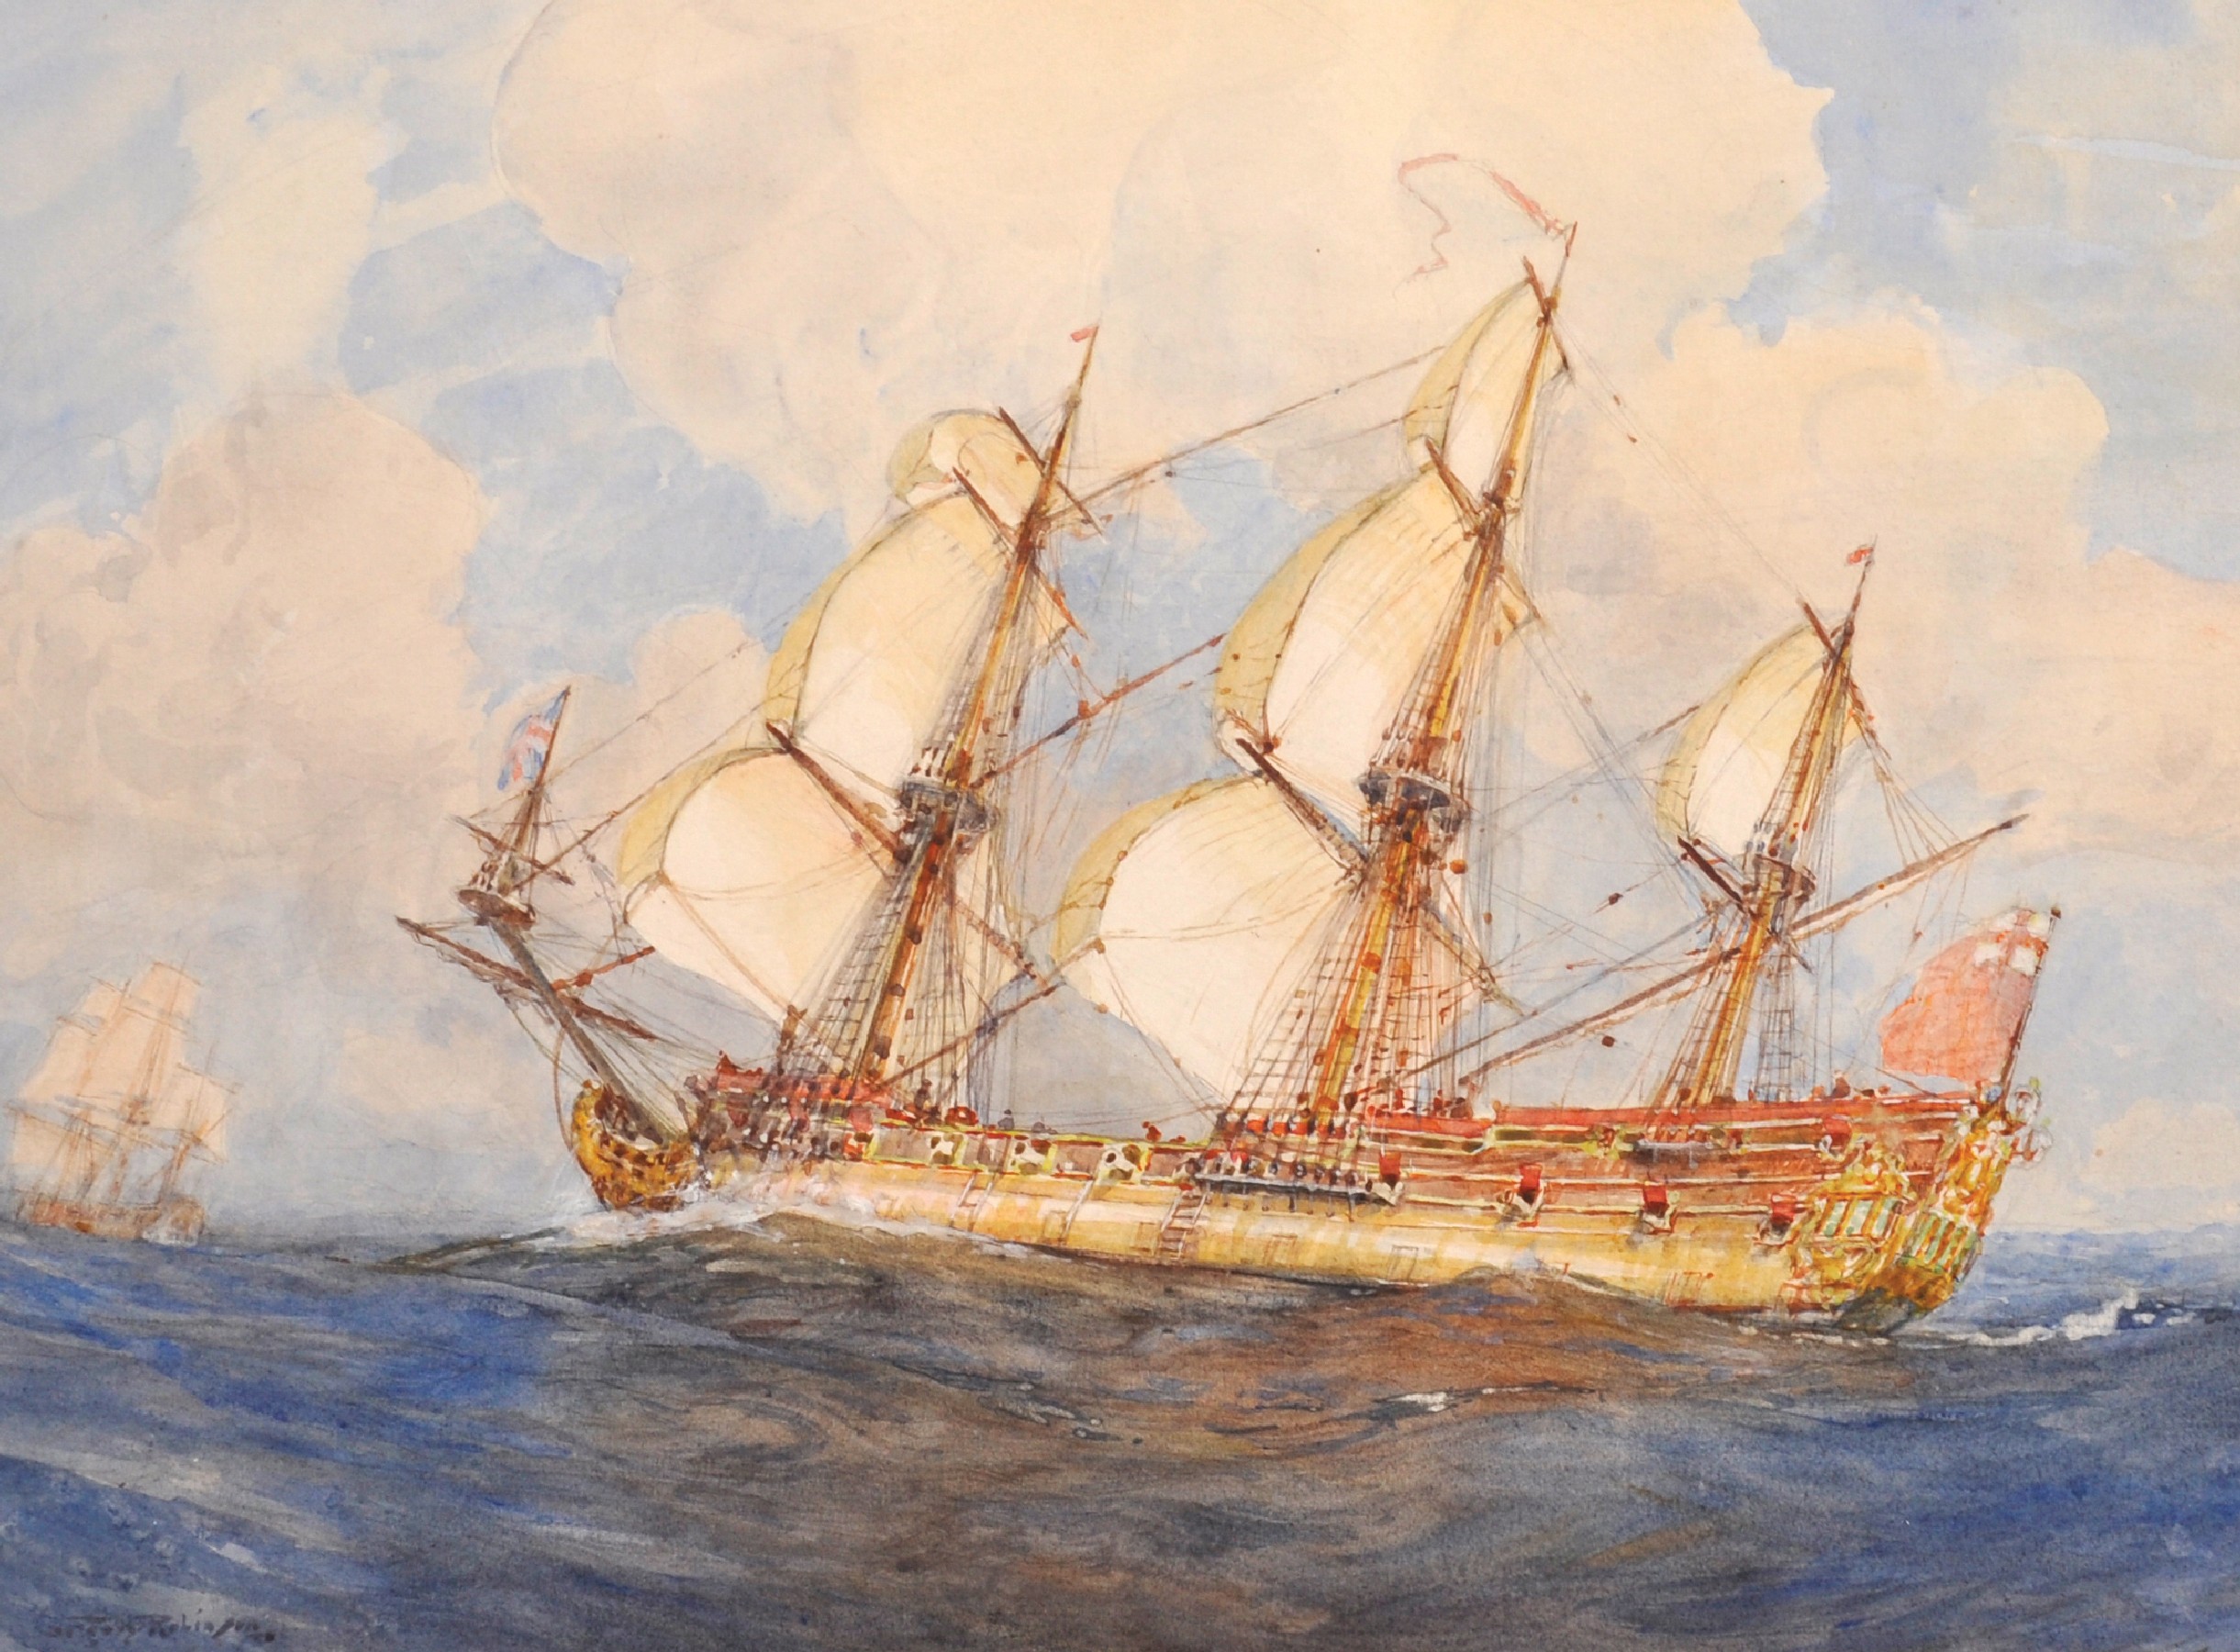 Gregory Robinson (1876-1967) British. Three Masted Sailing Ship at Sea, Watercolour, Signed, 10.